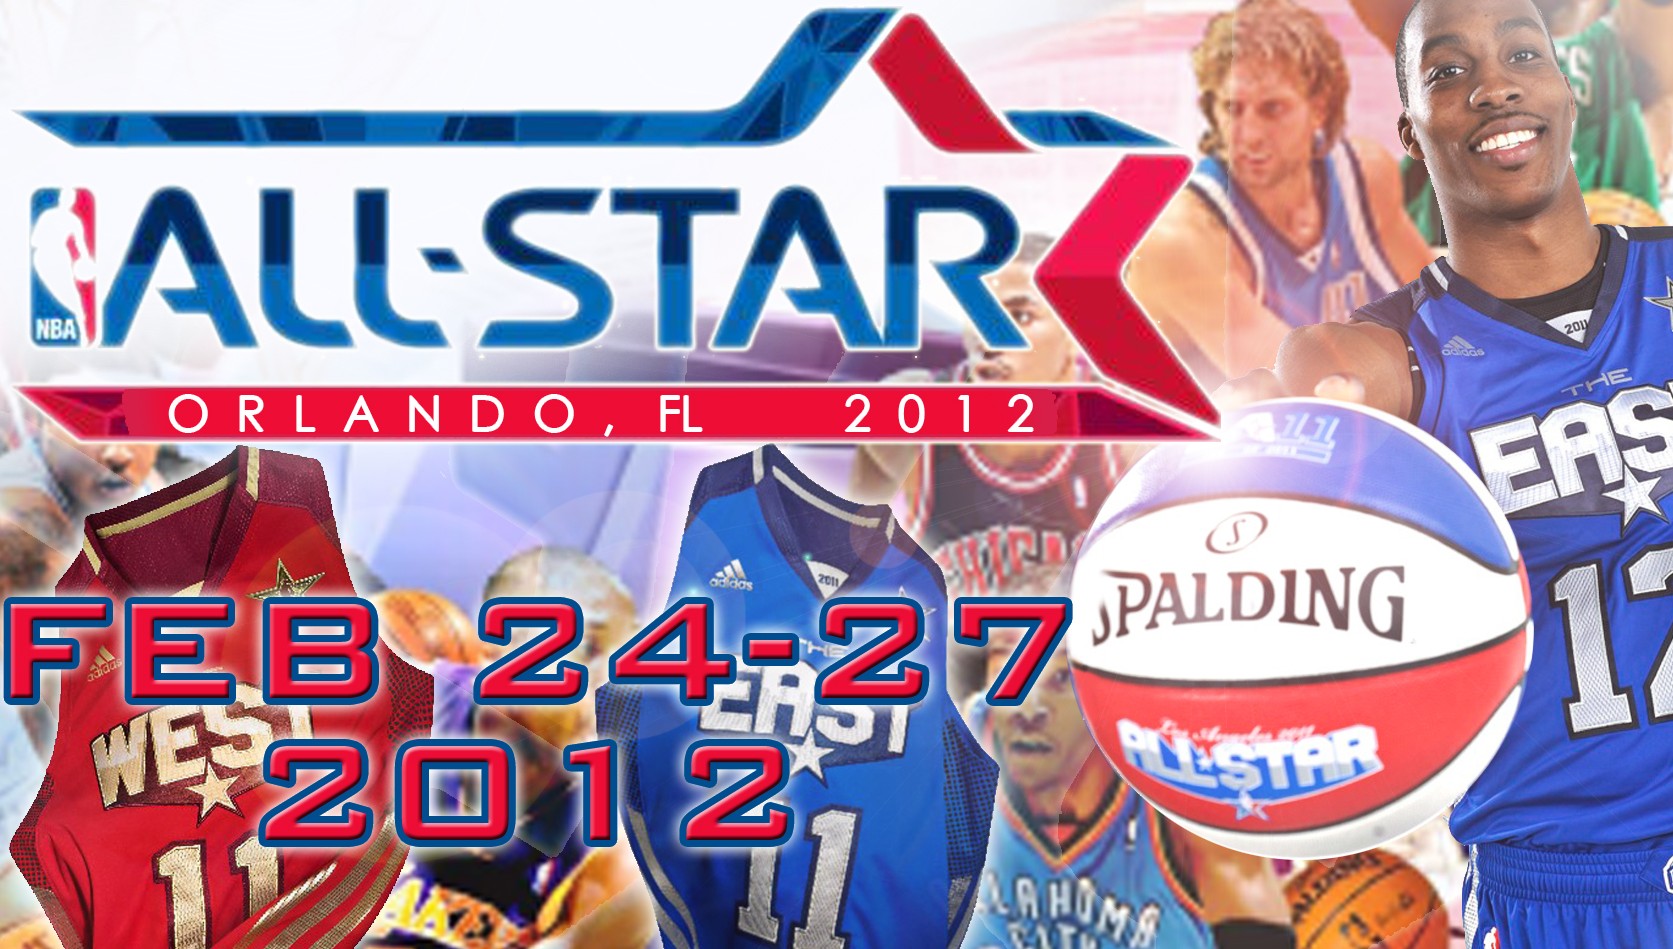 2012 NBA All Star Weekend Package - Eventbrite